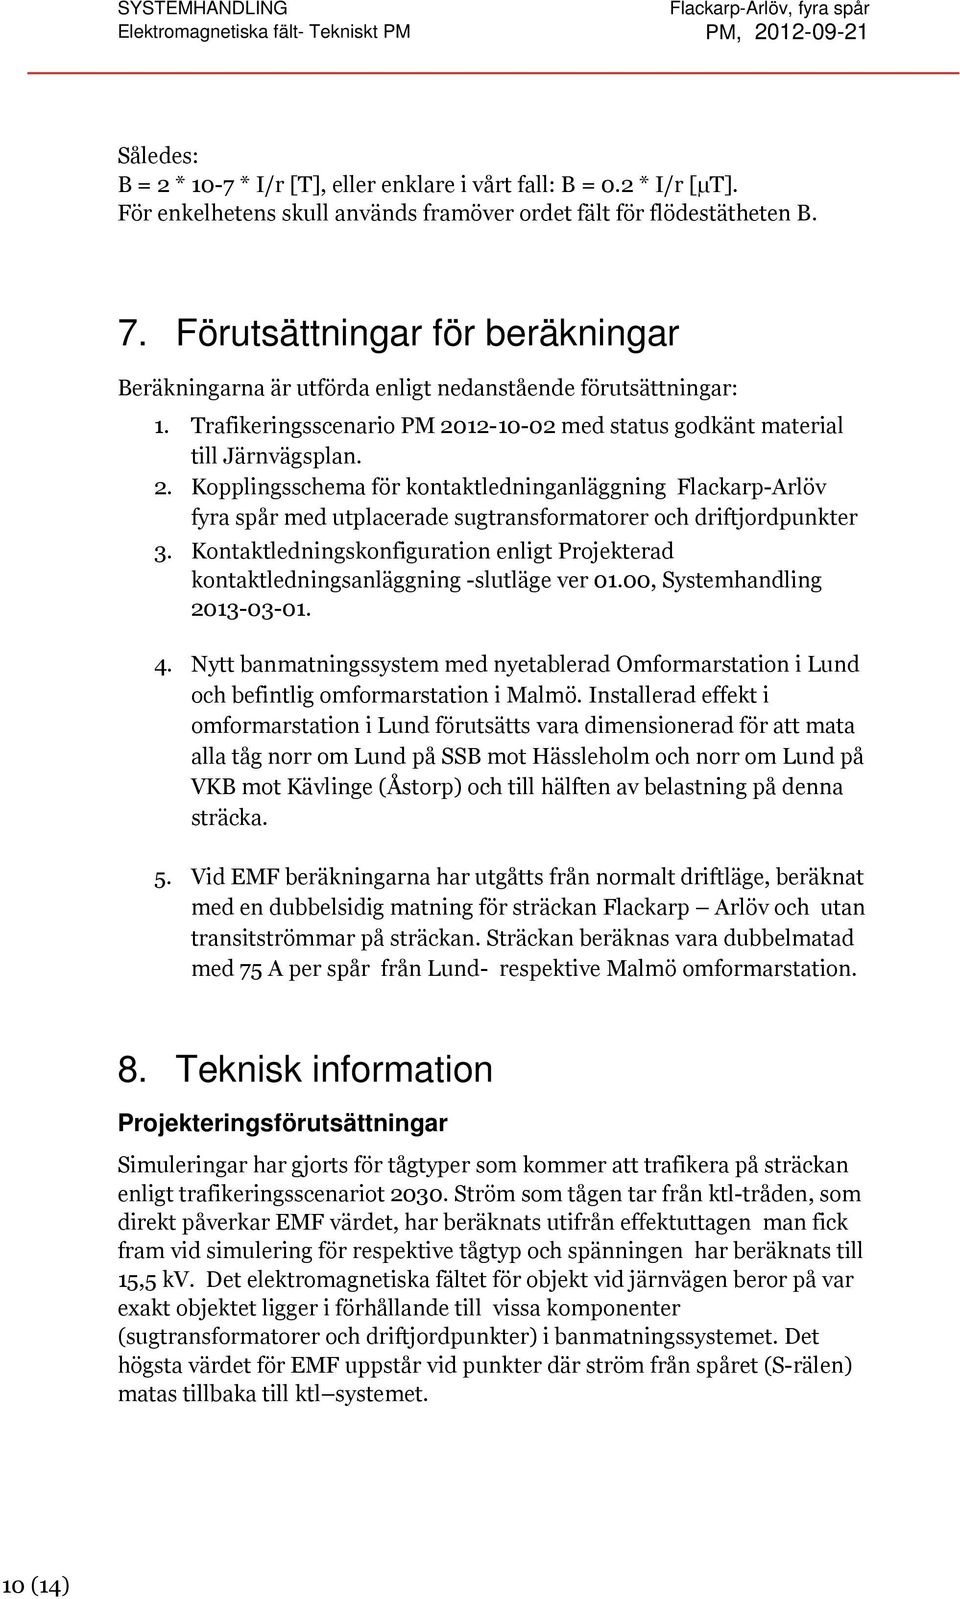 Trafikeringsscenario PM 2012-10-02 med status godkänt material till Järnvägsplan. 2. Kopplingsschema för kontaktledninganläggning Flackarp-Arlöv fyra spår med utplacerade sugtransformatorer och driftjordpunkter 3.